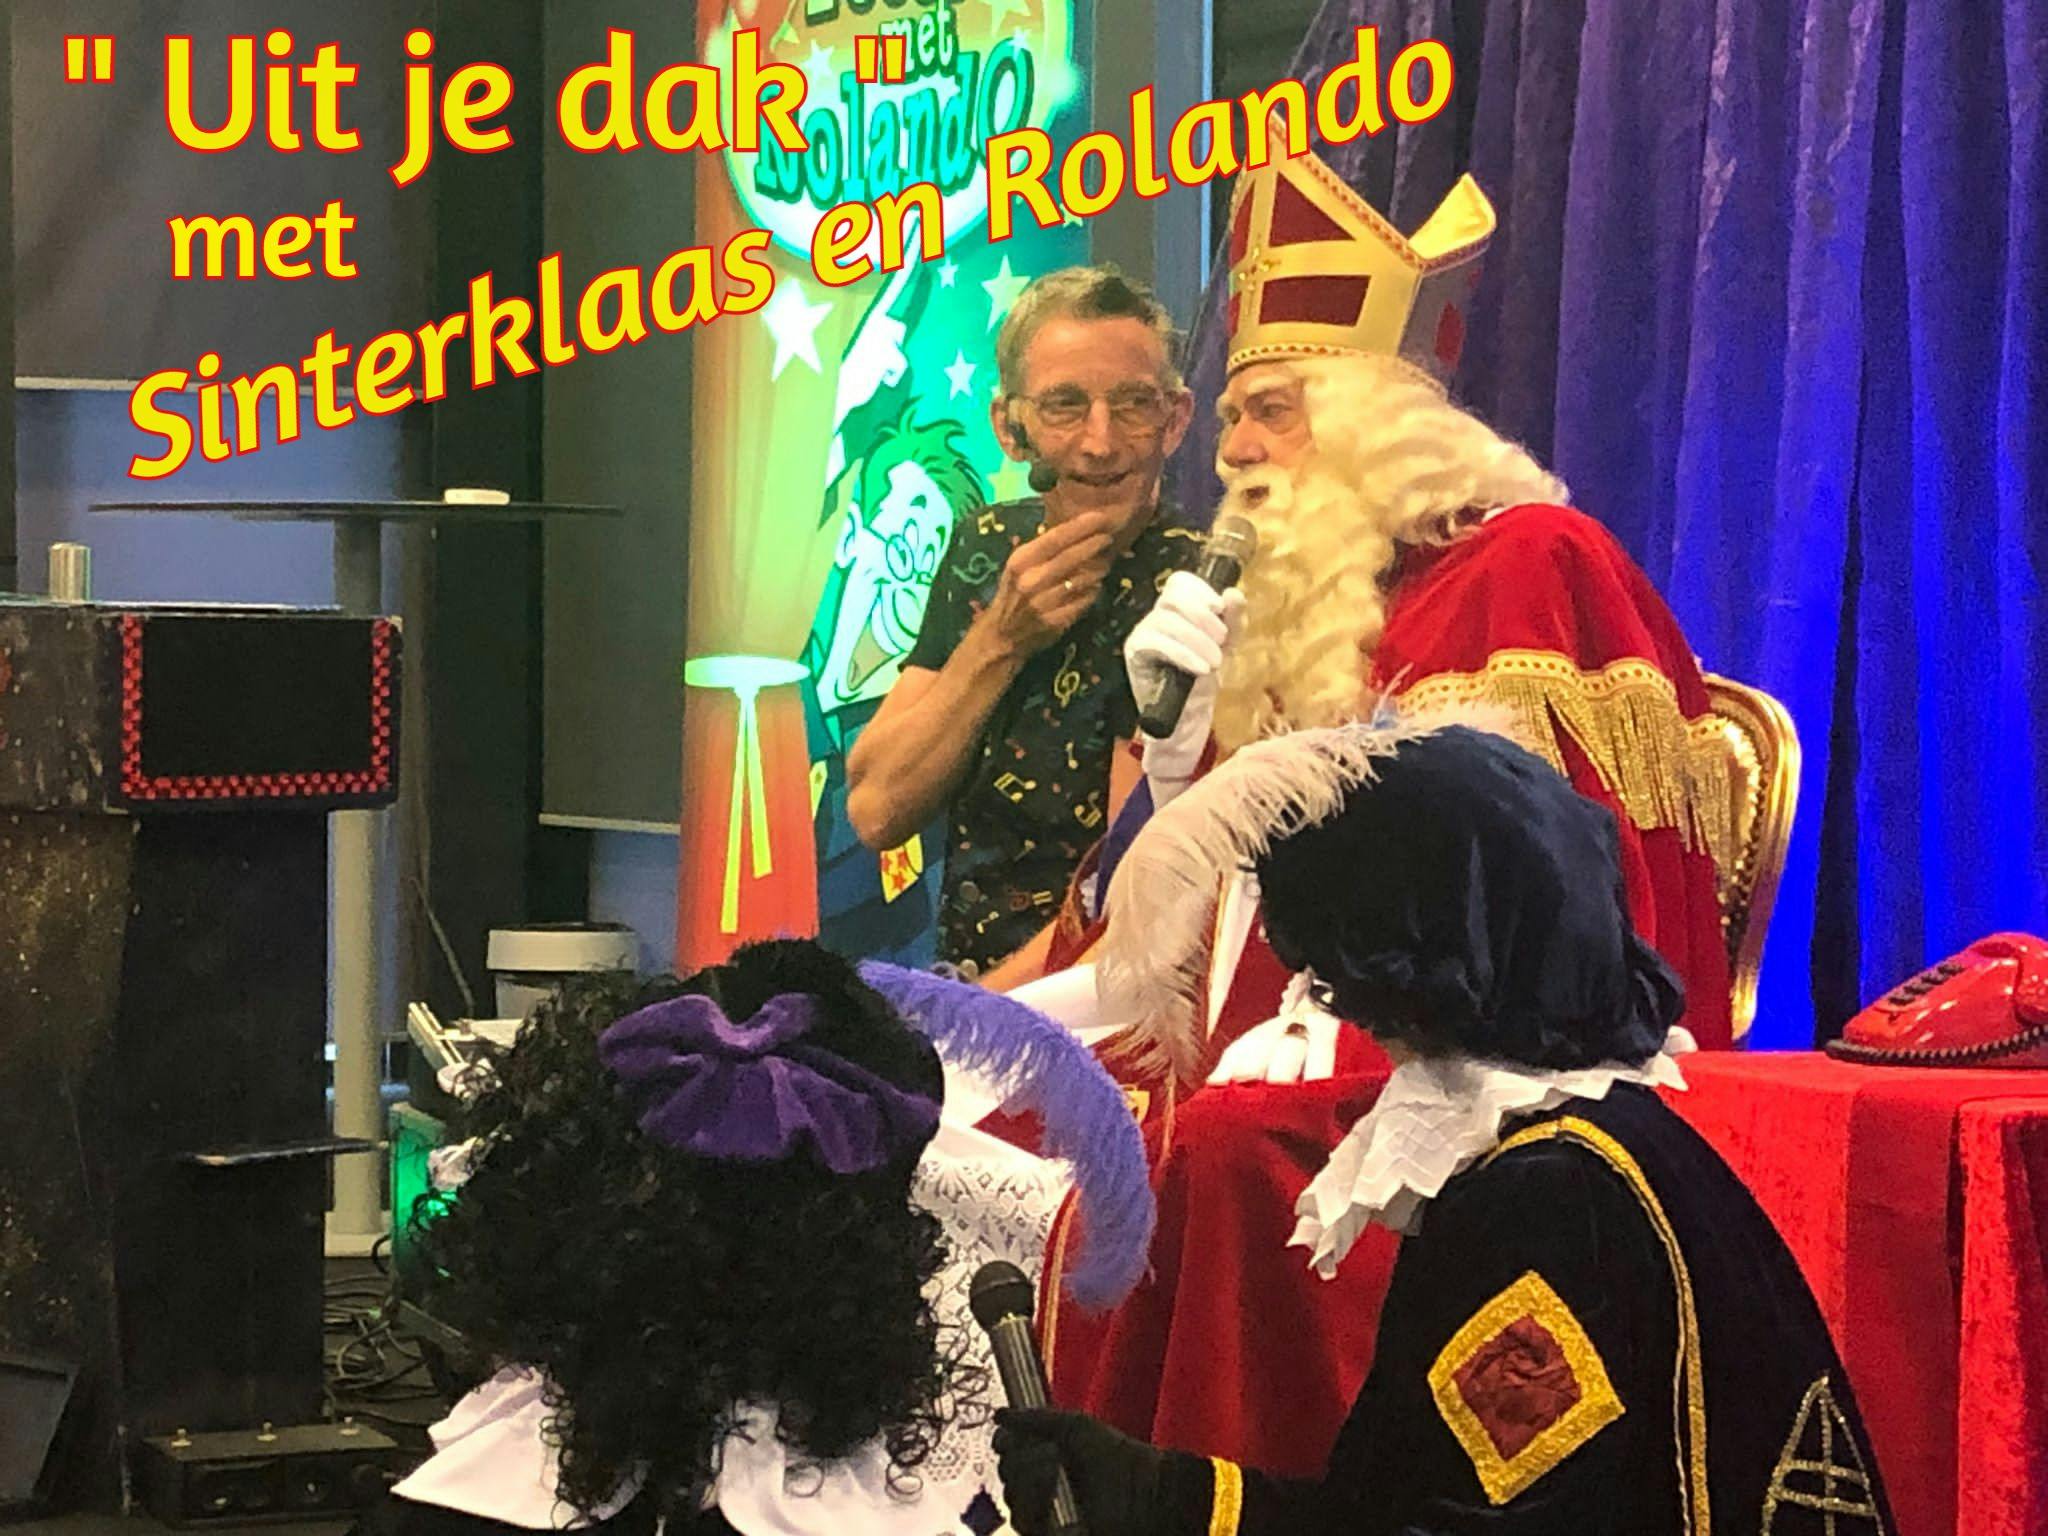 Sinterklaas show met Rolando